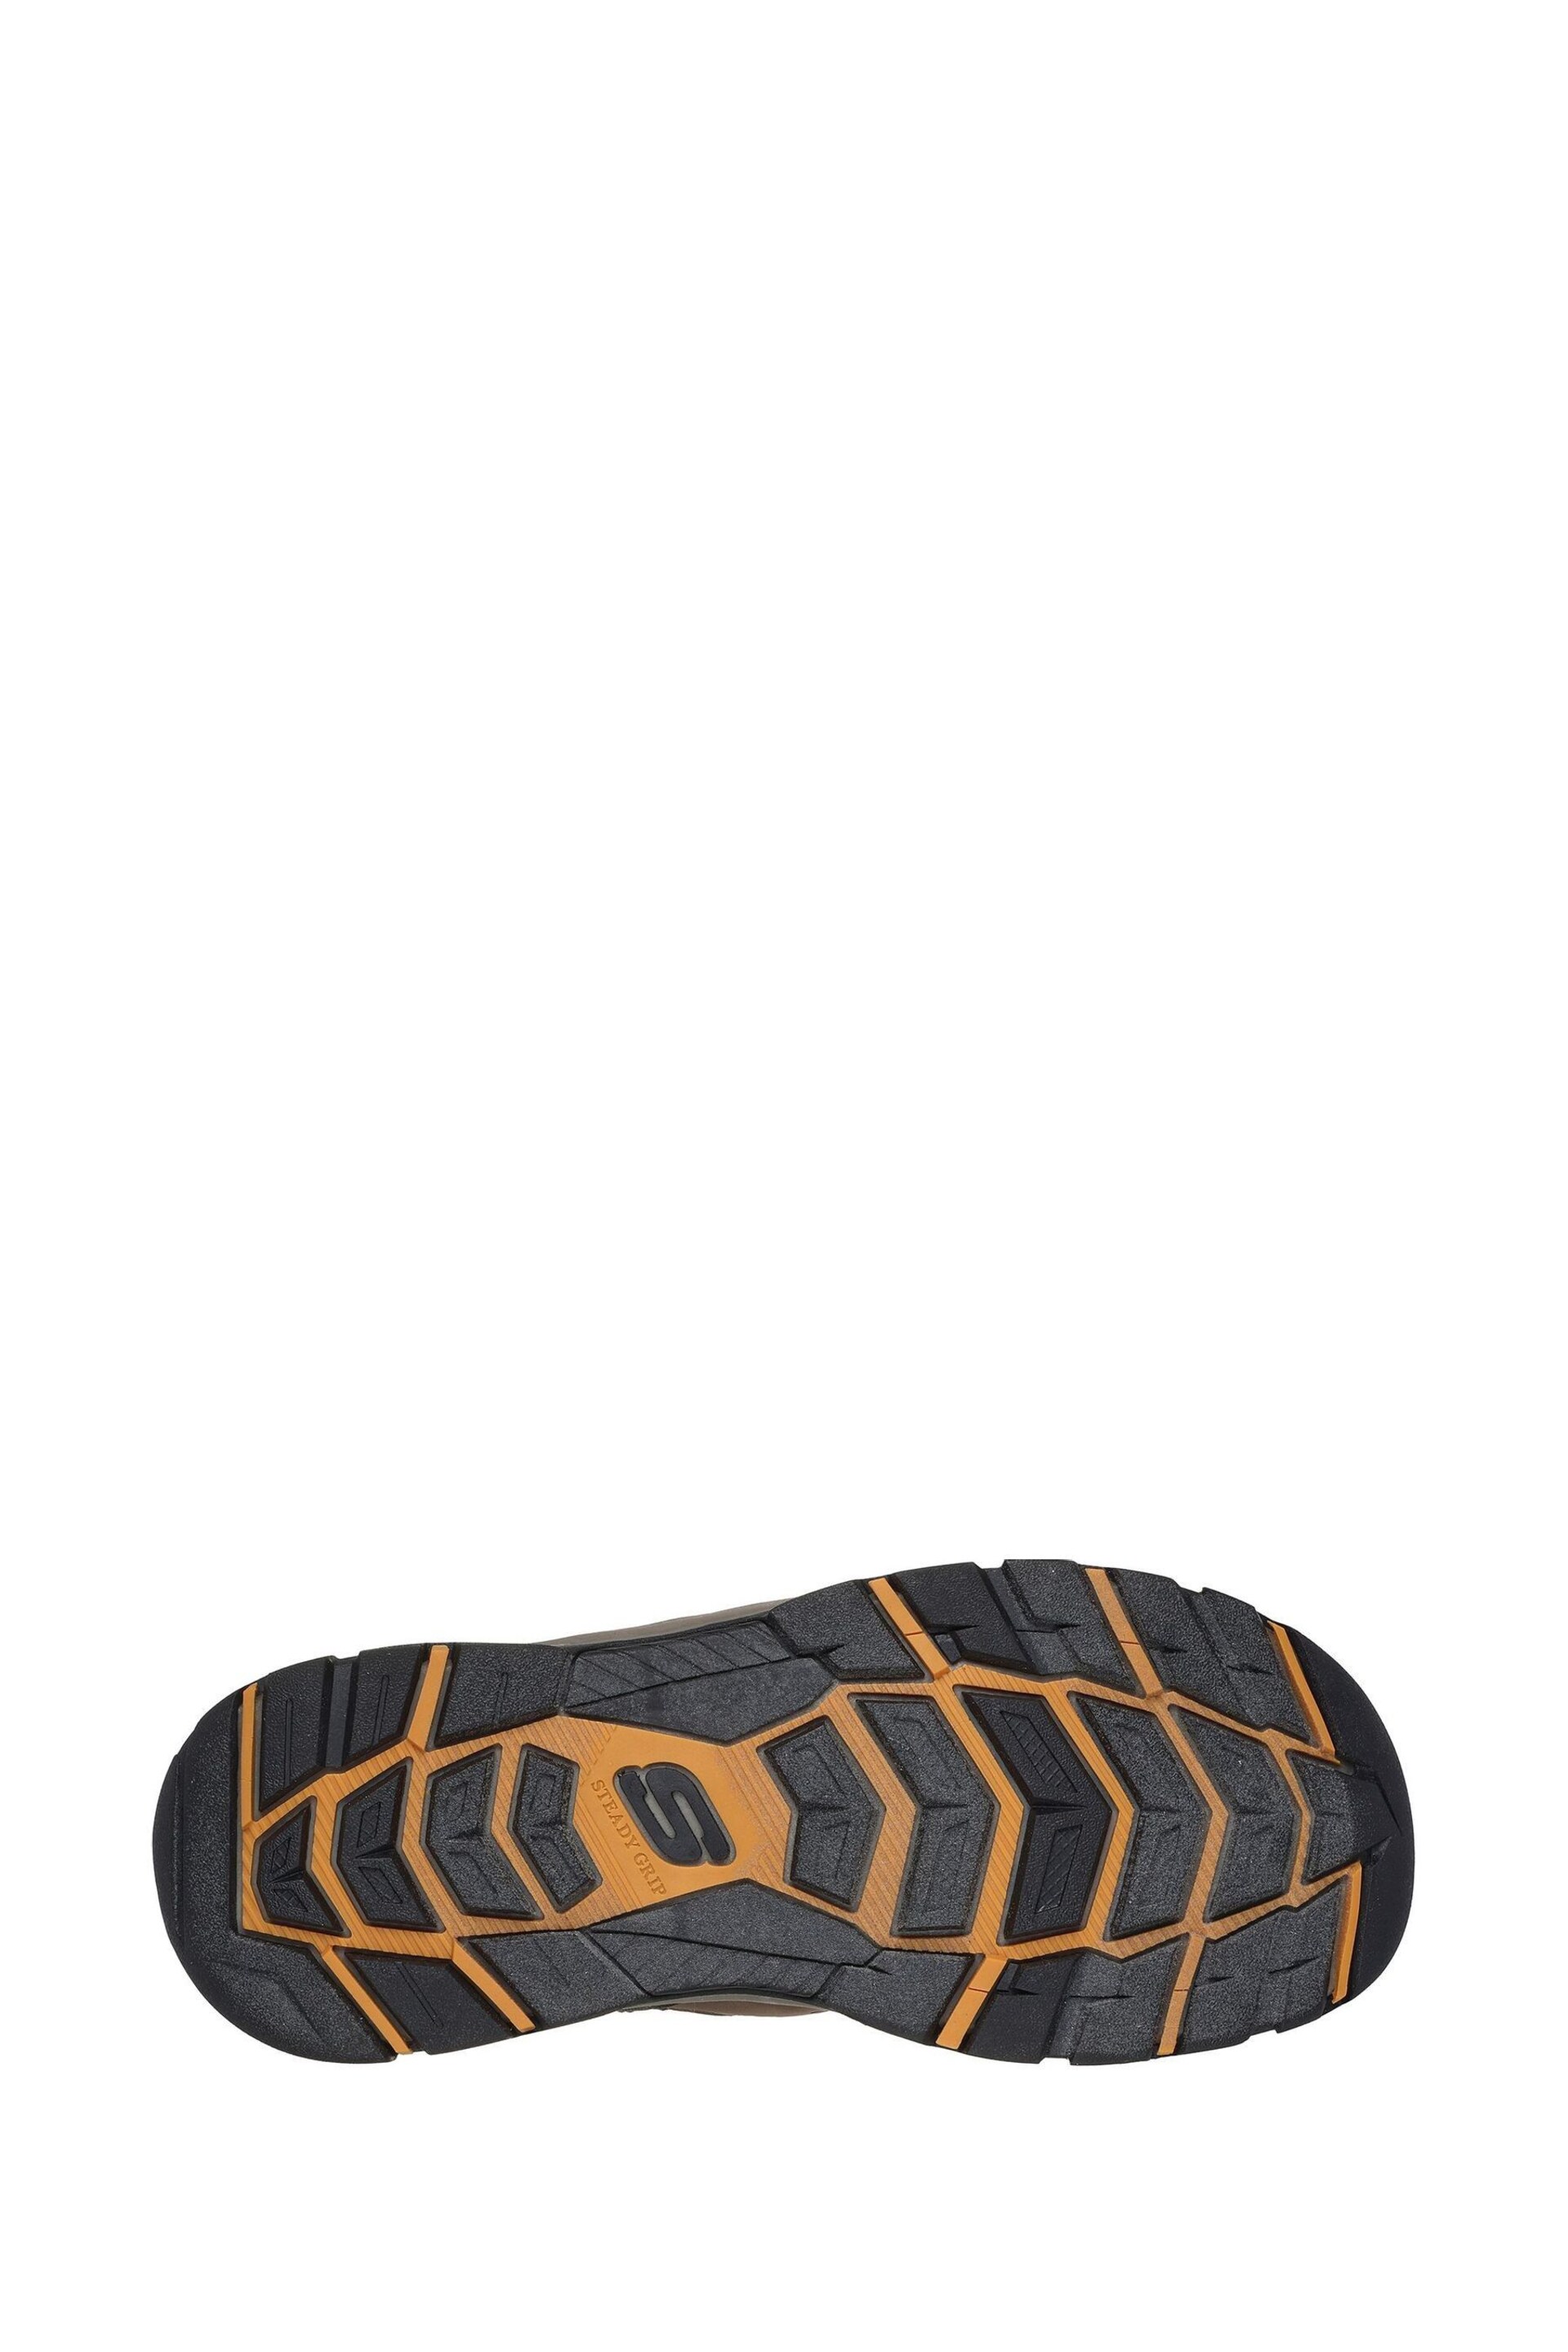 Skechers Brown Tresmen Menard Sandals - Image 4 of 4